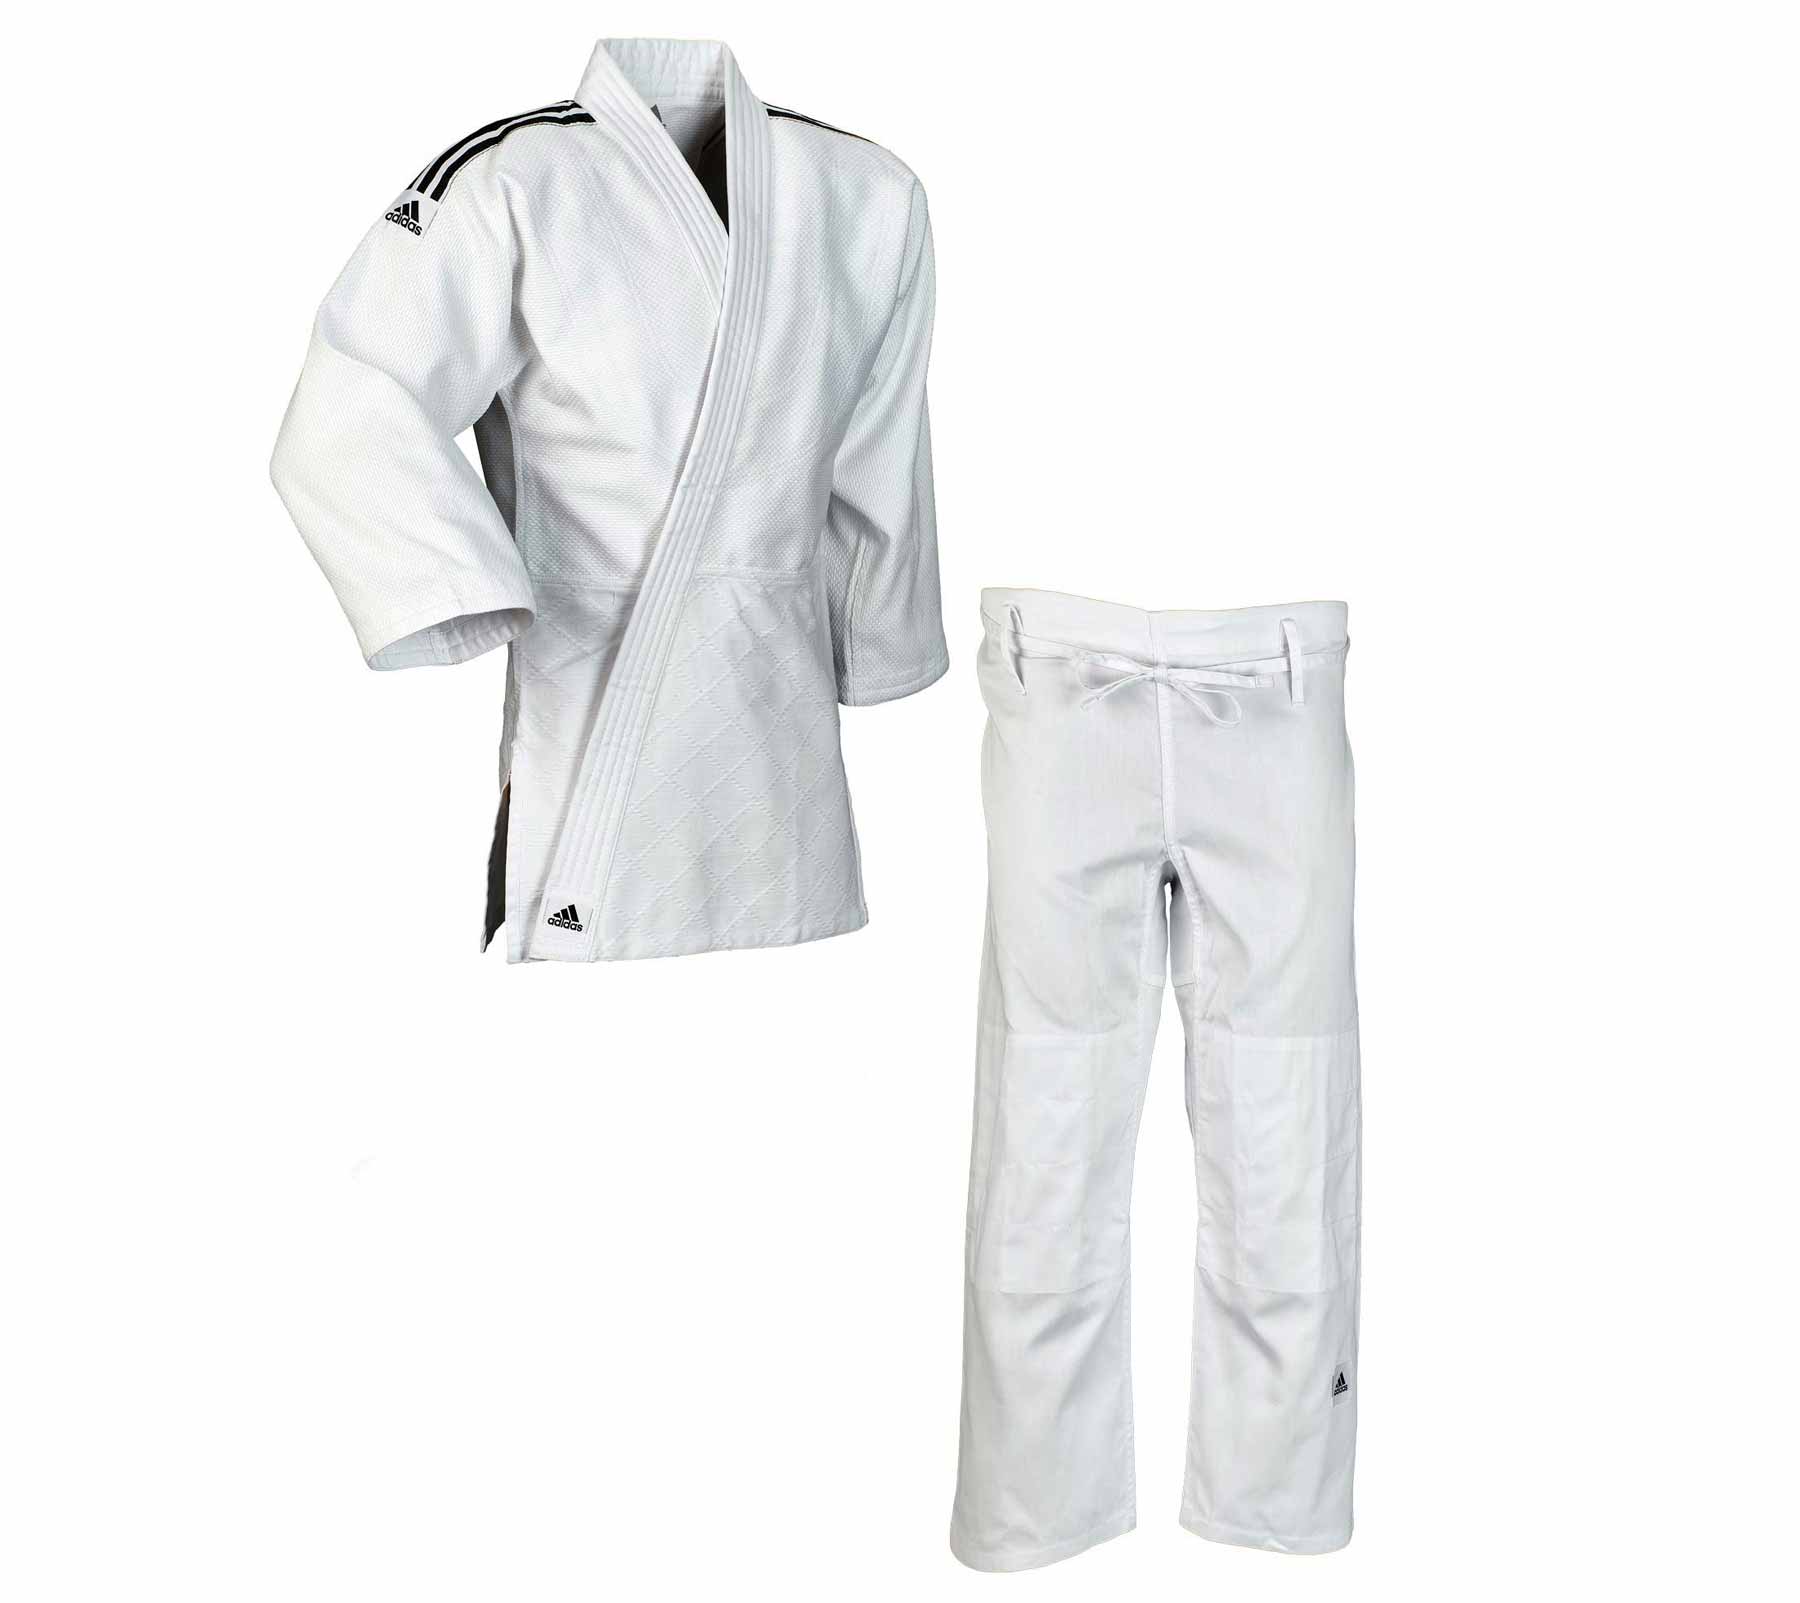 Кимоно для дзюдо подростковое Training белое (размер 130 см)